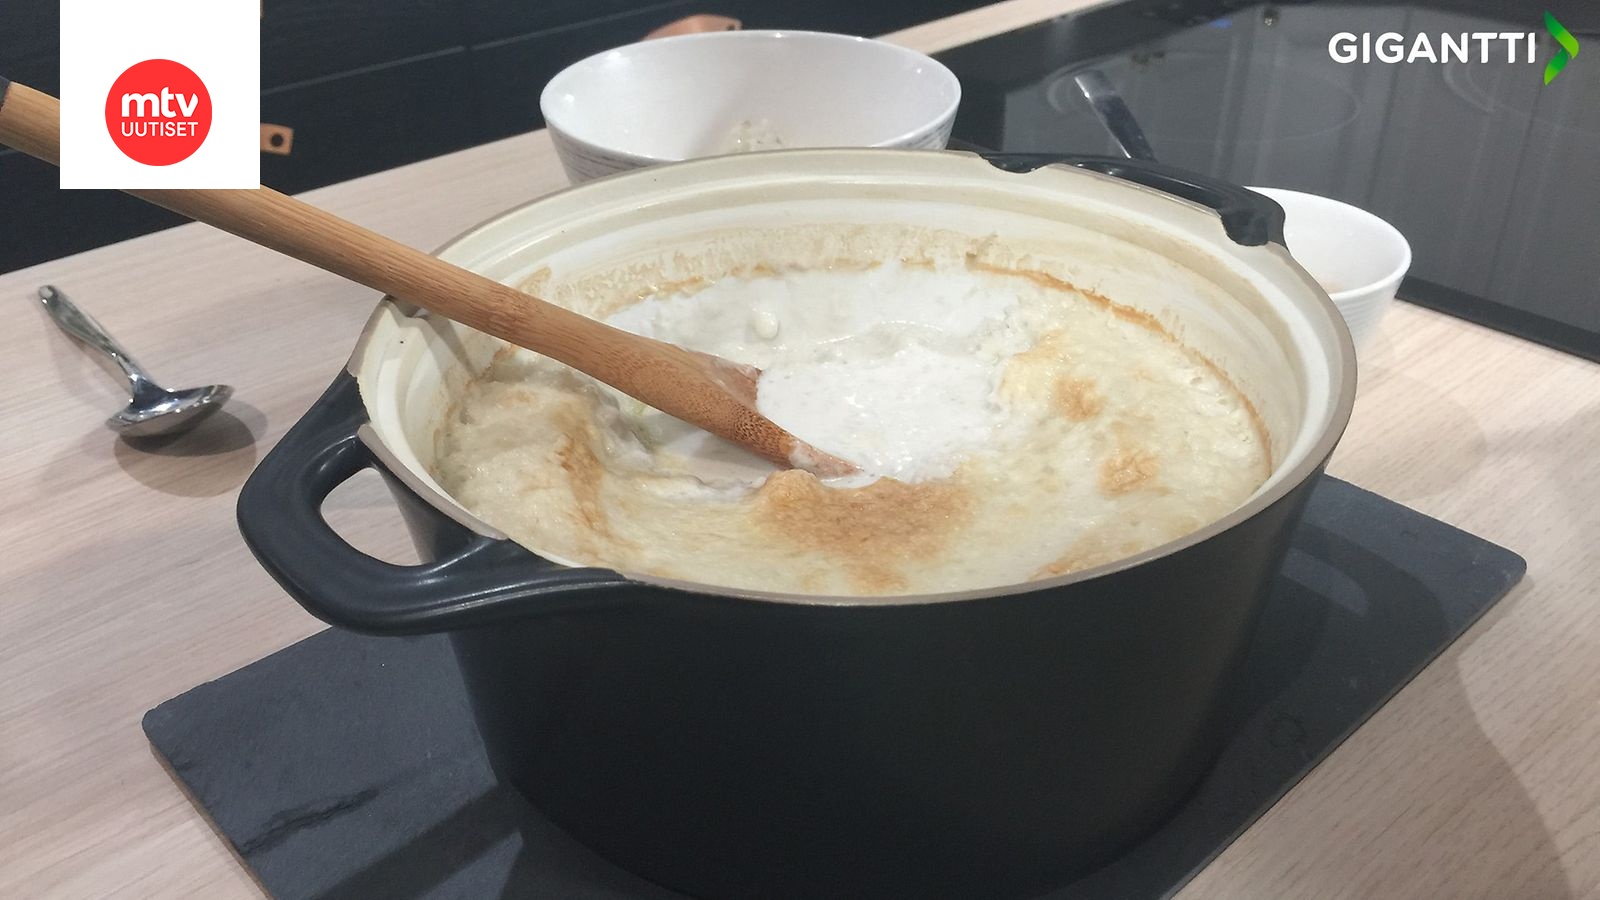 Helppo tapa tuunata perinteinen riisipuuro: Korvaa maito kookosmaidolla! |  Makuja | MTV Uutiset